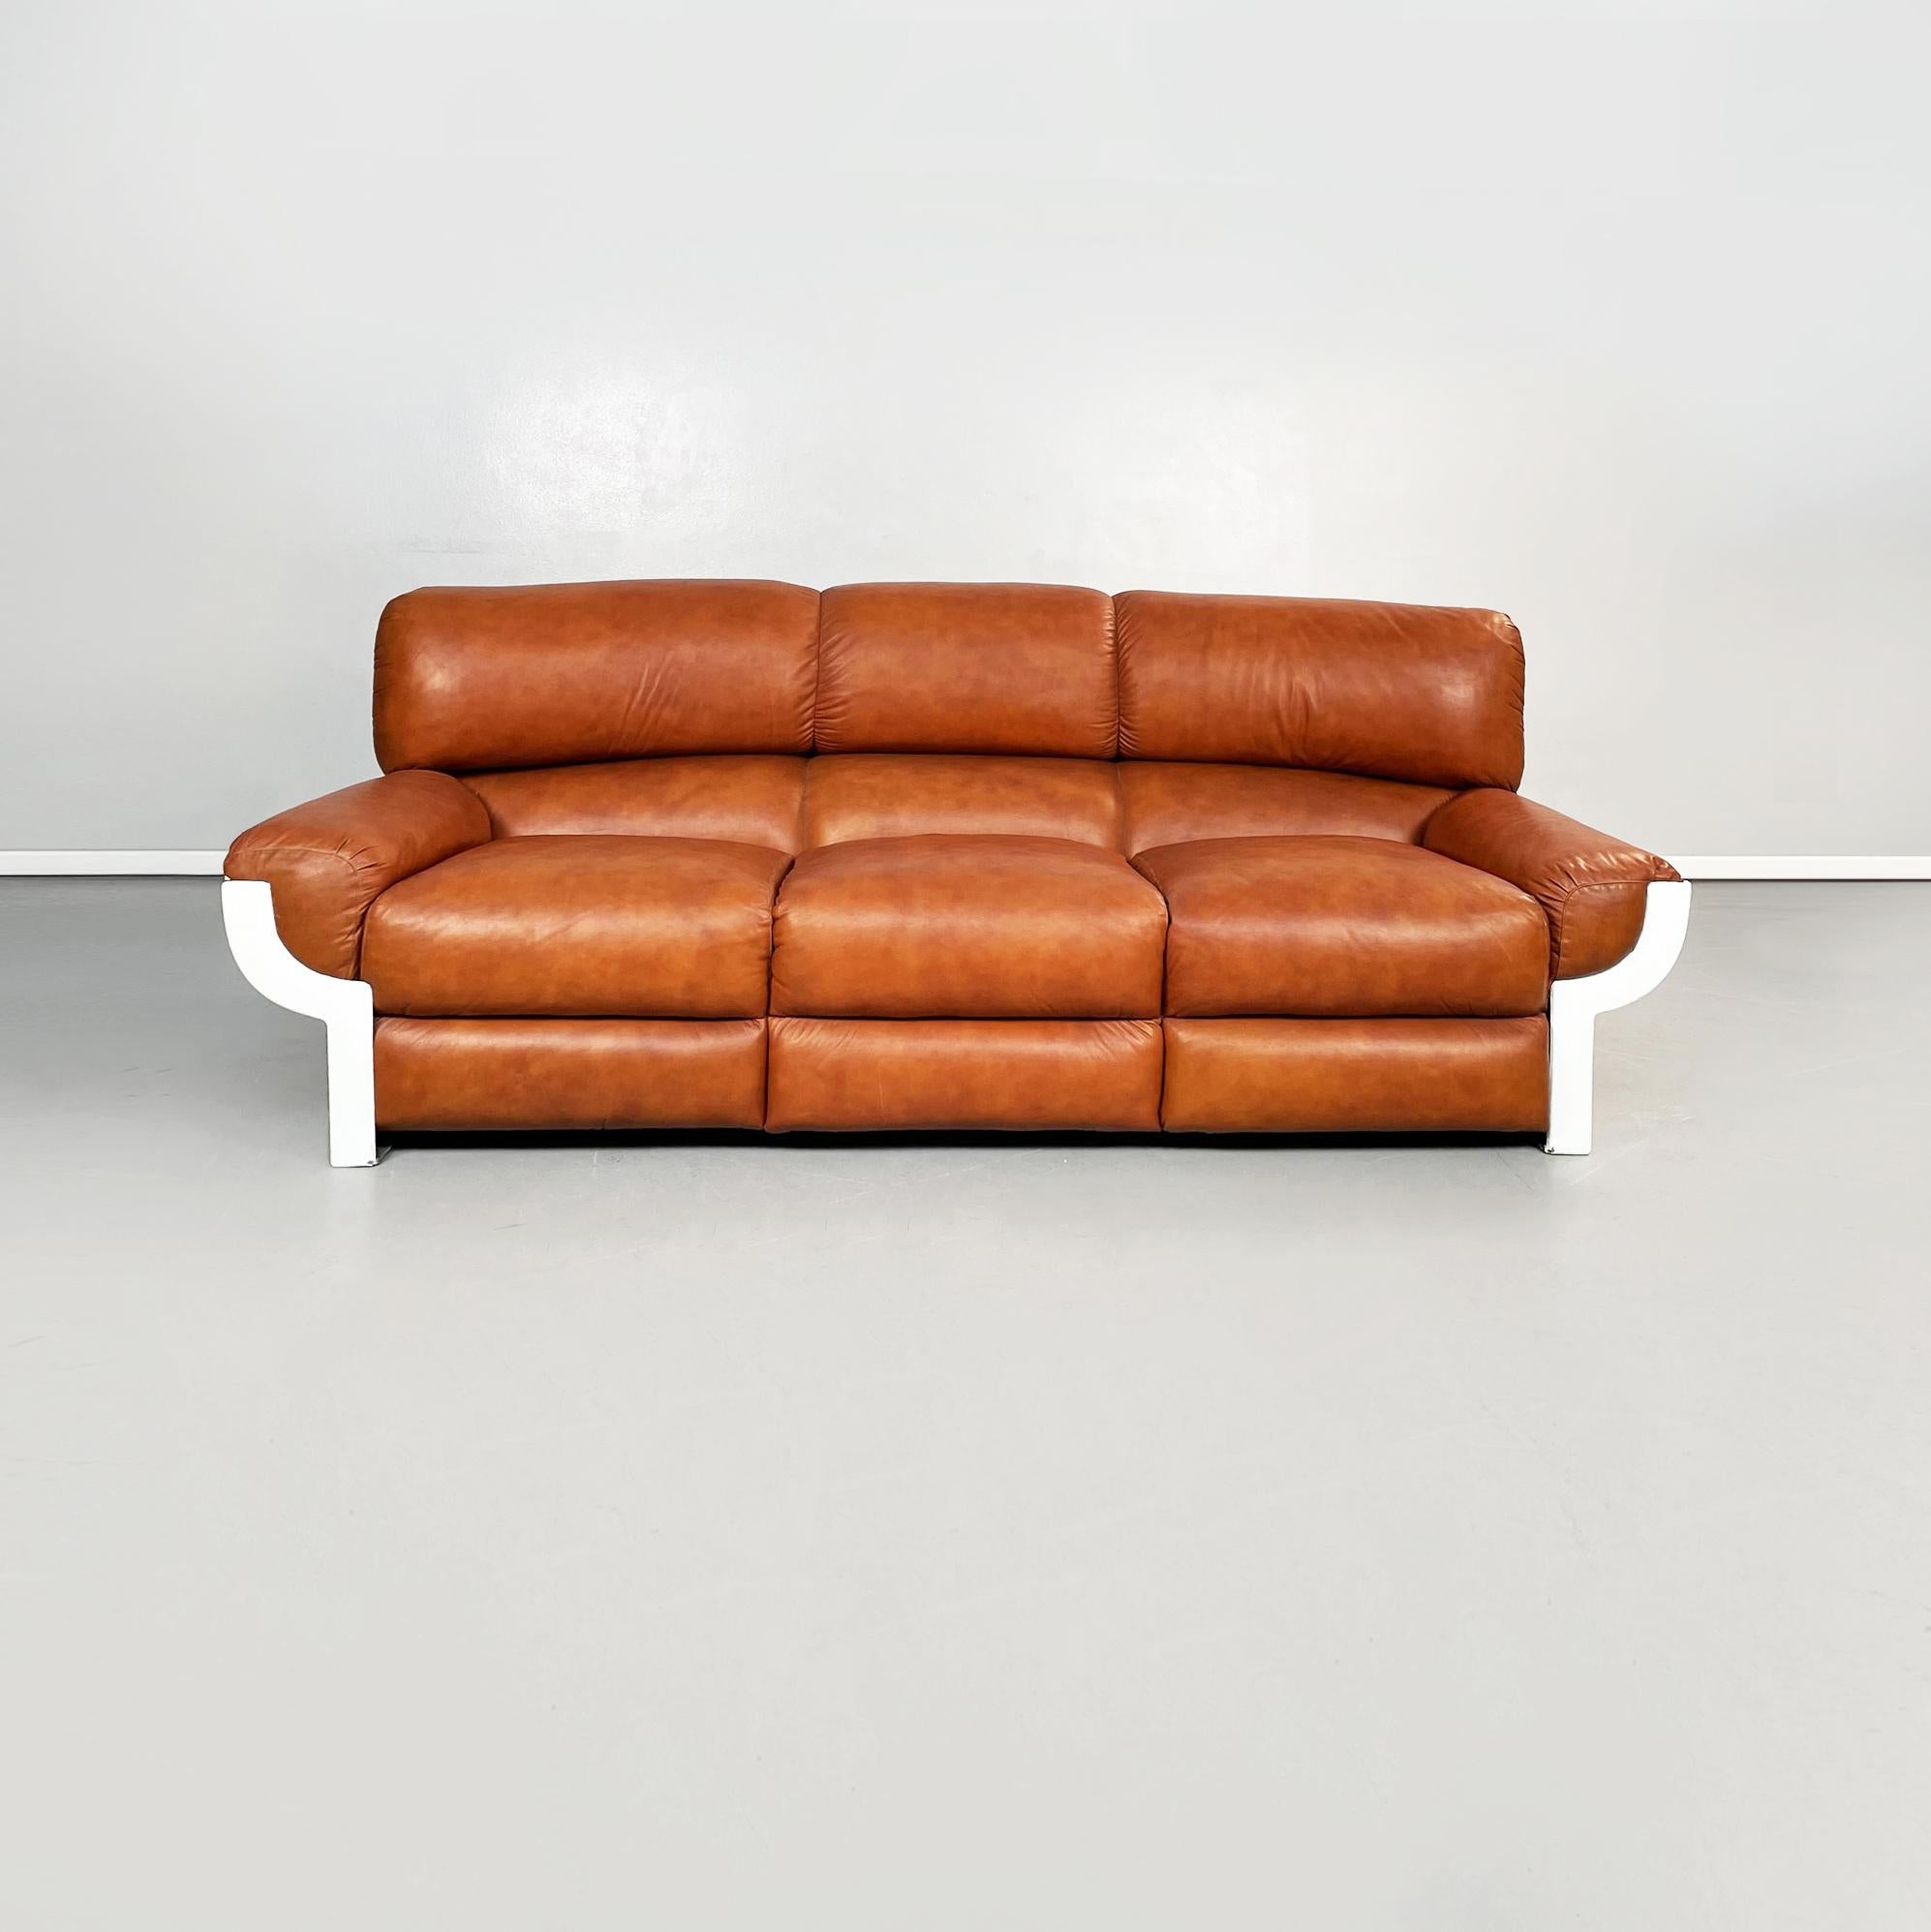 Italienisches Sofa aus braunem Leder und Kunststoff aus der Mitte des Jahrhunderts FLOU von Betti für Habitat Ids, 1970er Jahre
Ein Dreisitzer-Sofa mod. FLOU. Der rechteckige Sitz besteht aus 3 gepolsterten Kissen, die mit cognacbraunem Leder